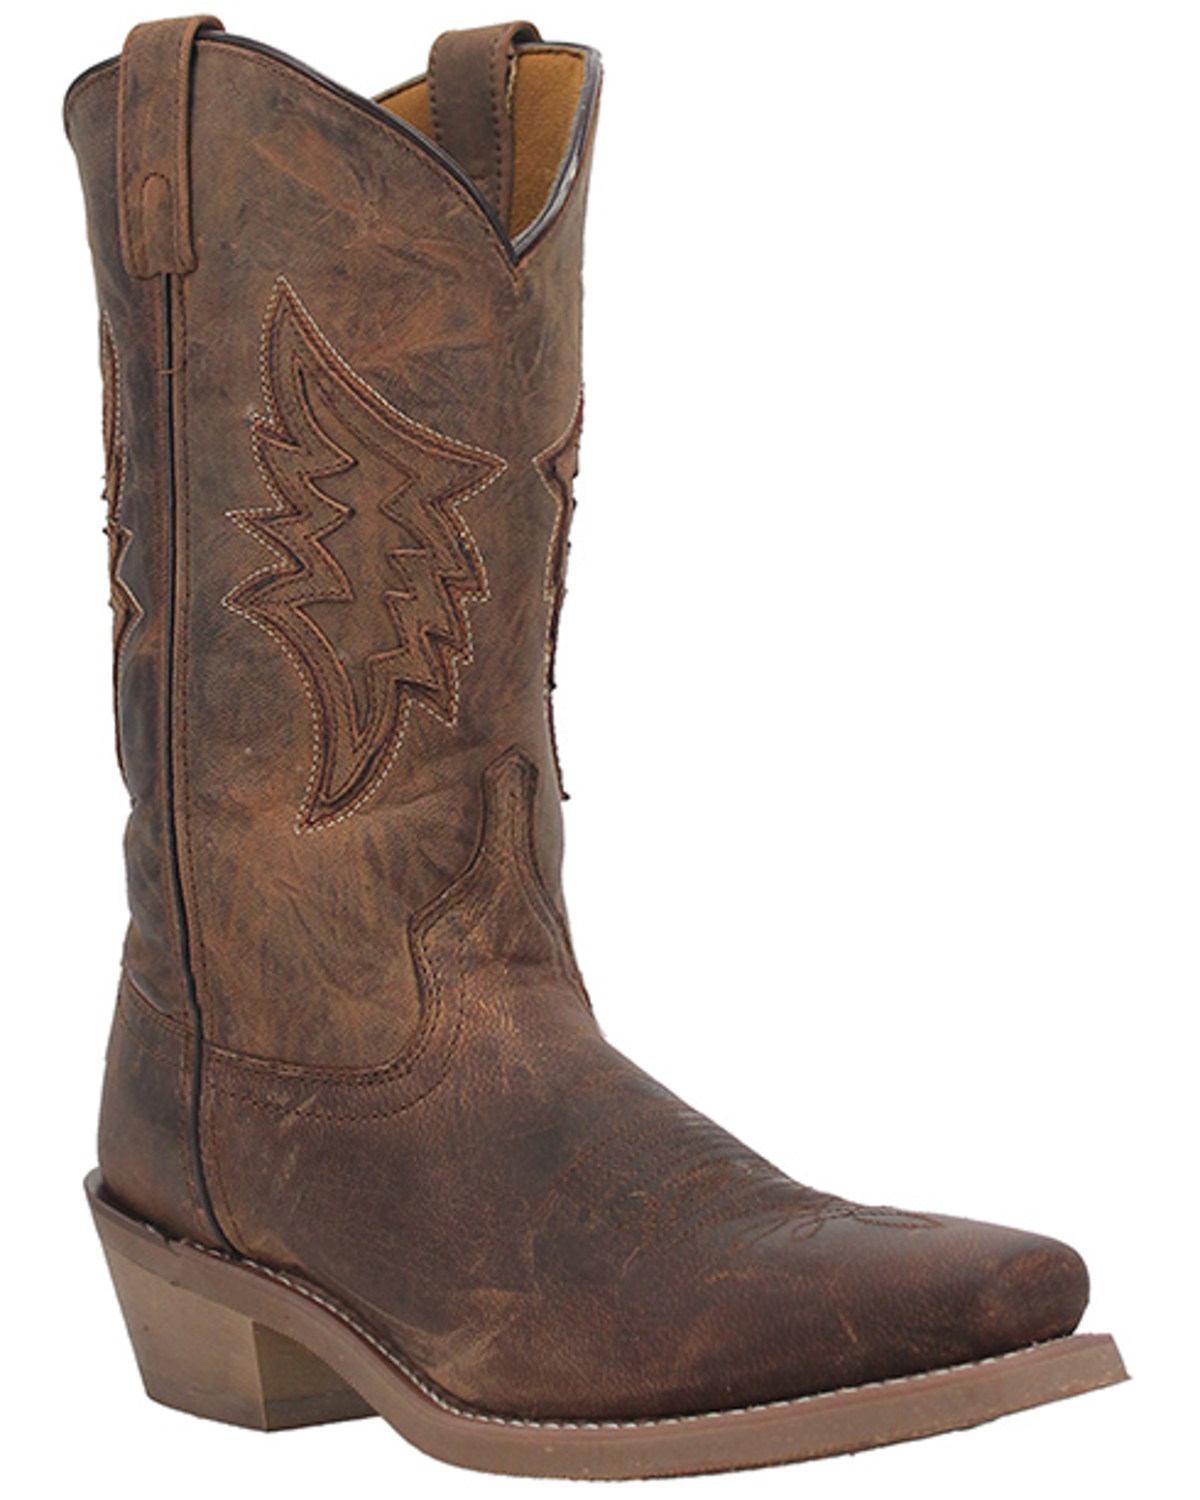 Laredo Men's Nico Western Boots - Square Toe